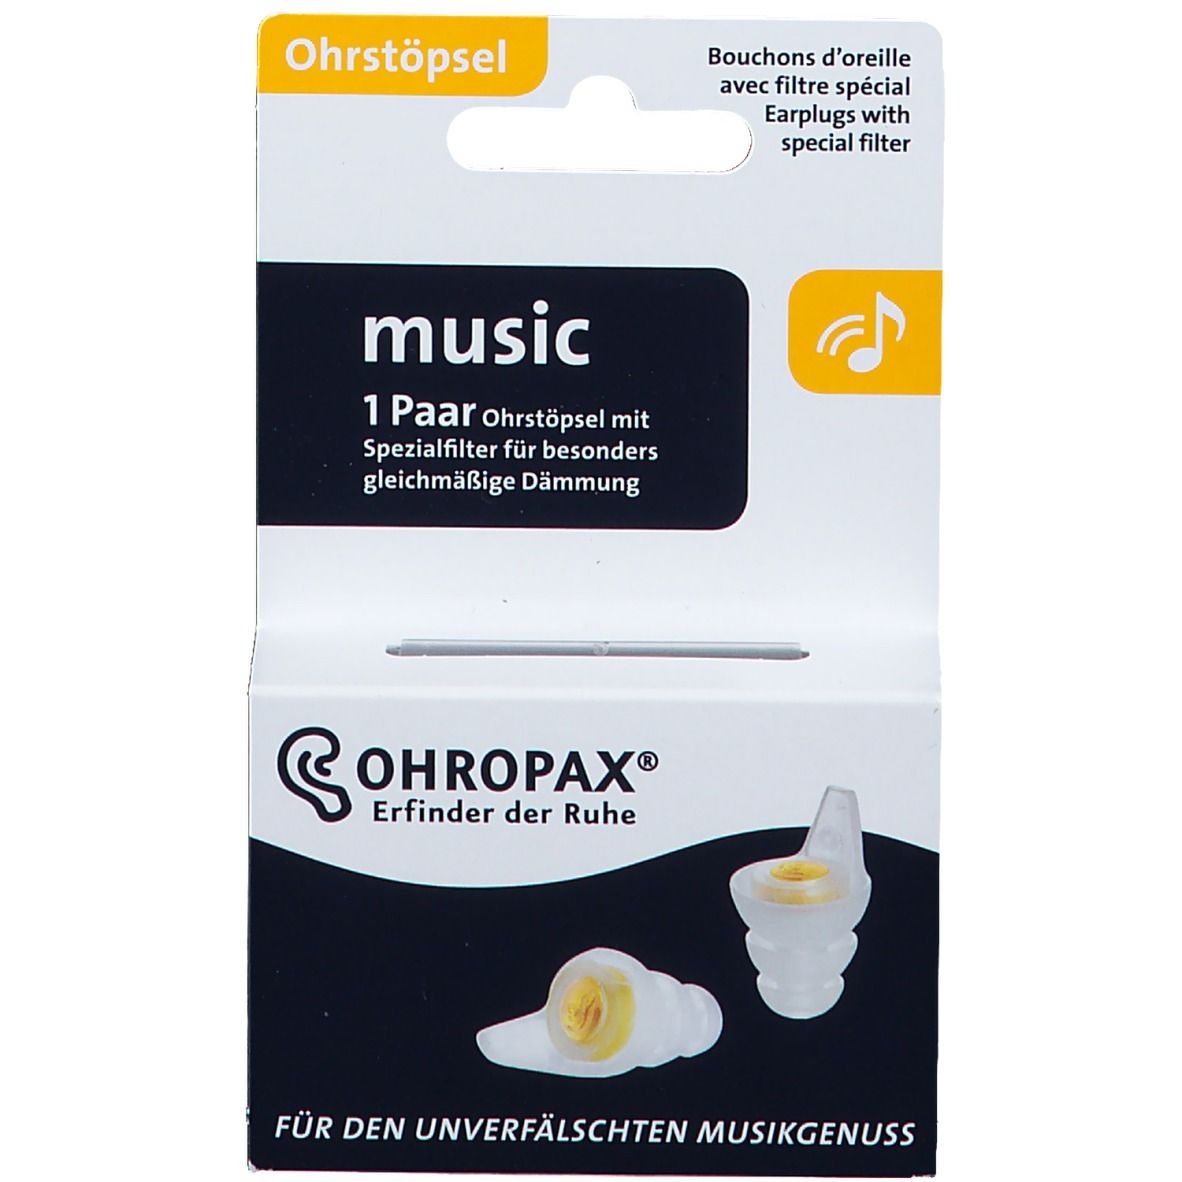 OHROPAX® music Ohrstöpsel mit Filter